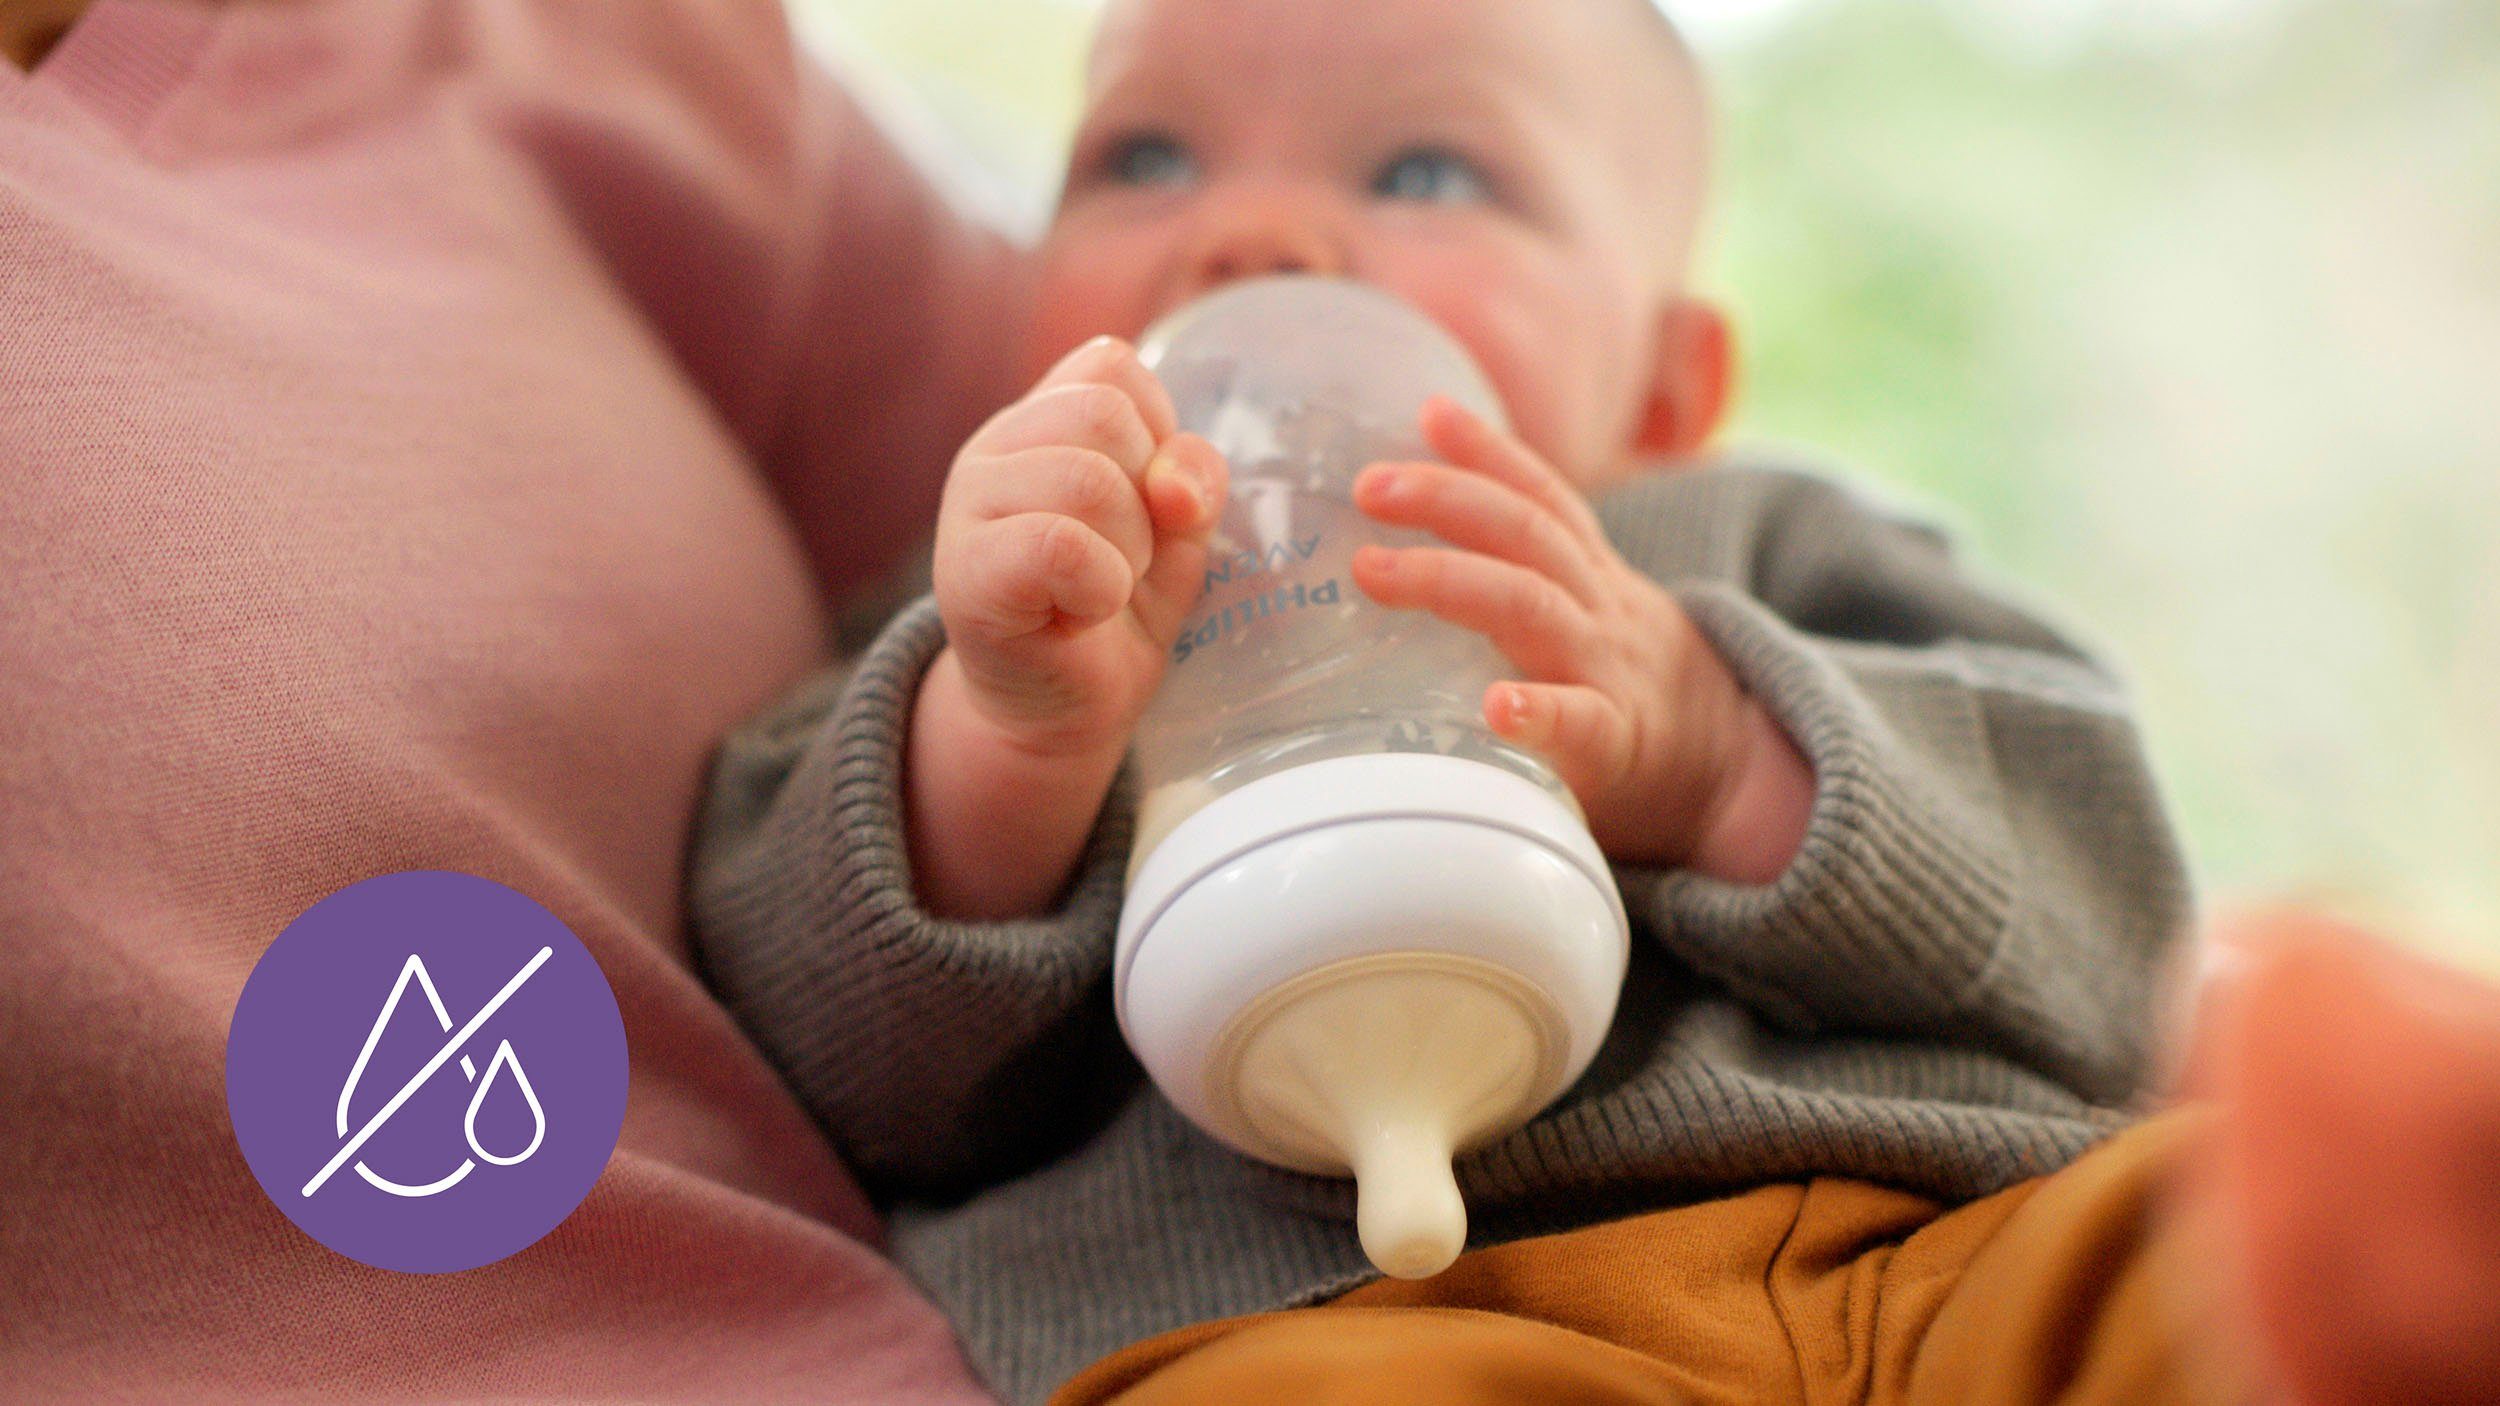 Flaschenbürste Schnuller Philips ultra Response Babyflasche für Starter-Set AVENT SCD838/11, Flaschen, soft Neugeborene Natural 4 und